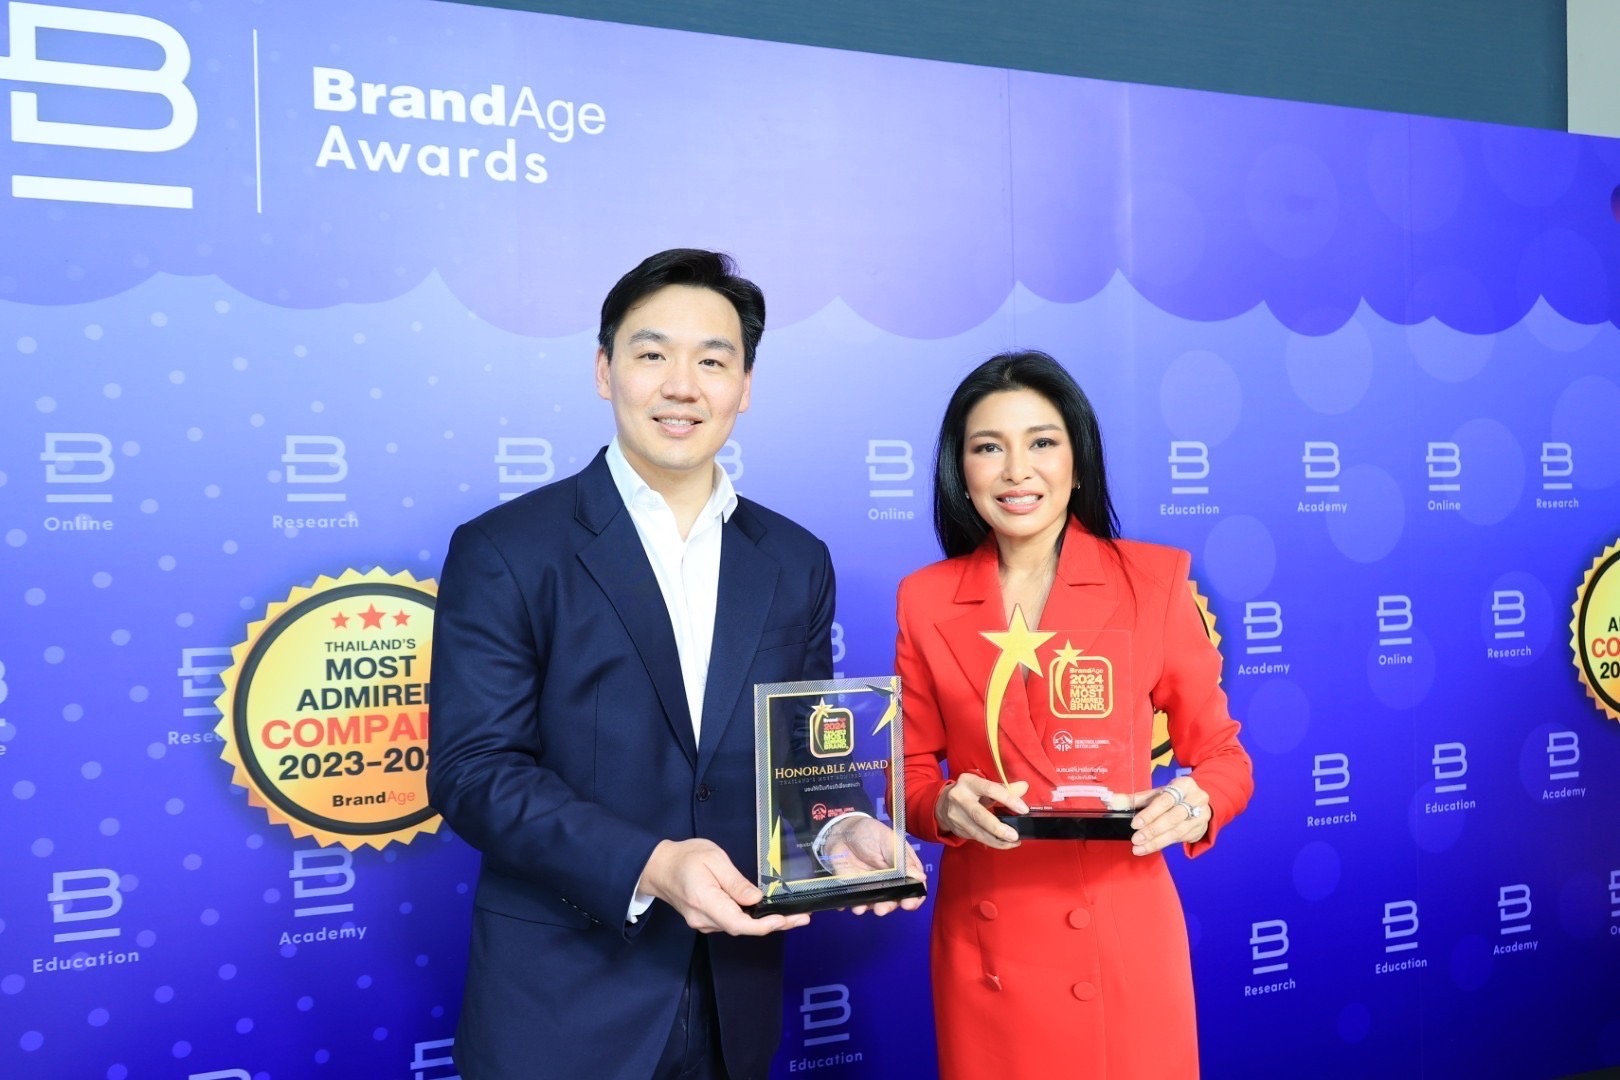 เอไอเอ ประเทศไทย คว้า 4 รางวัลสุดยอดแบรนด์และบริษัทที่น่าเชื่อถือที่สุด จากเวทีThailand’s Most Admired Company และ Thailand’s Most Admired Brand2024 โดยนิตยสาร BrandAge